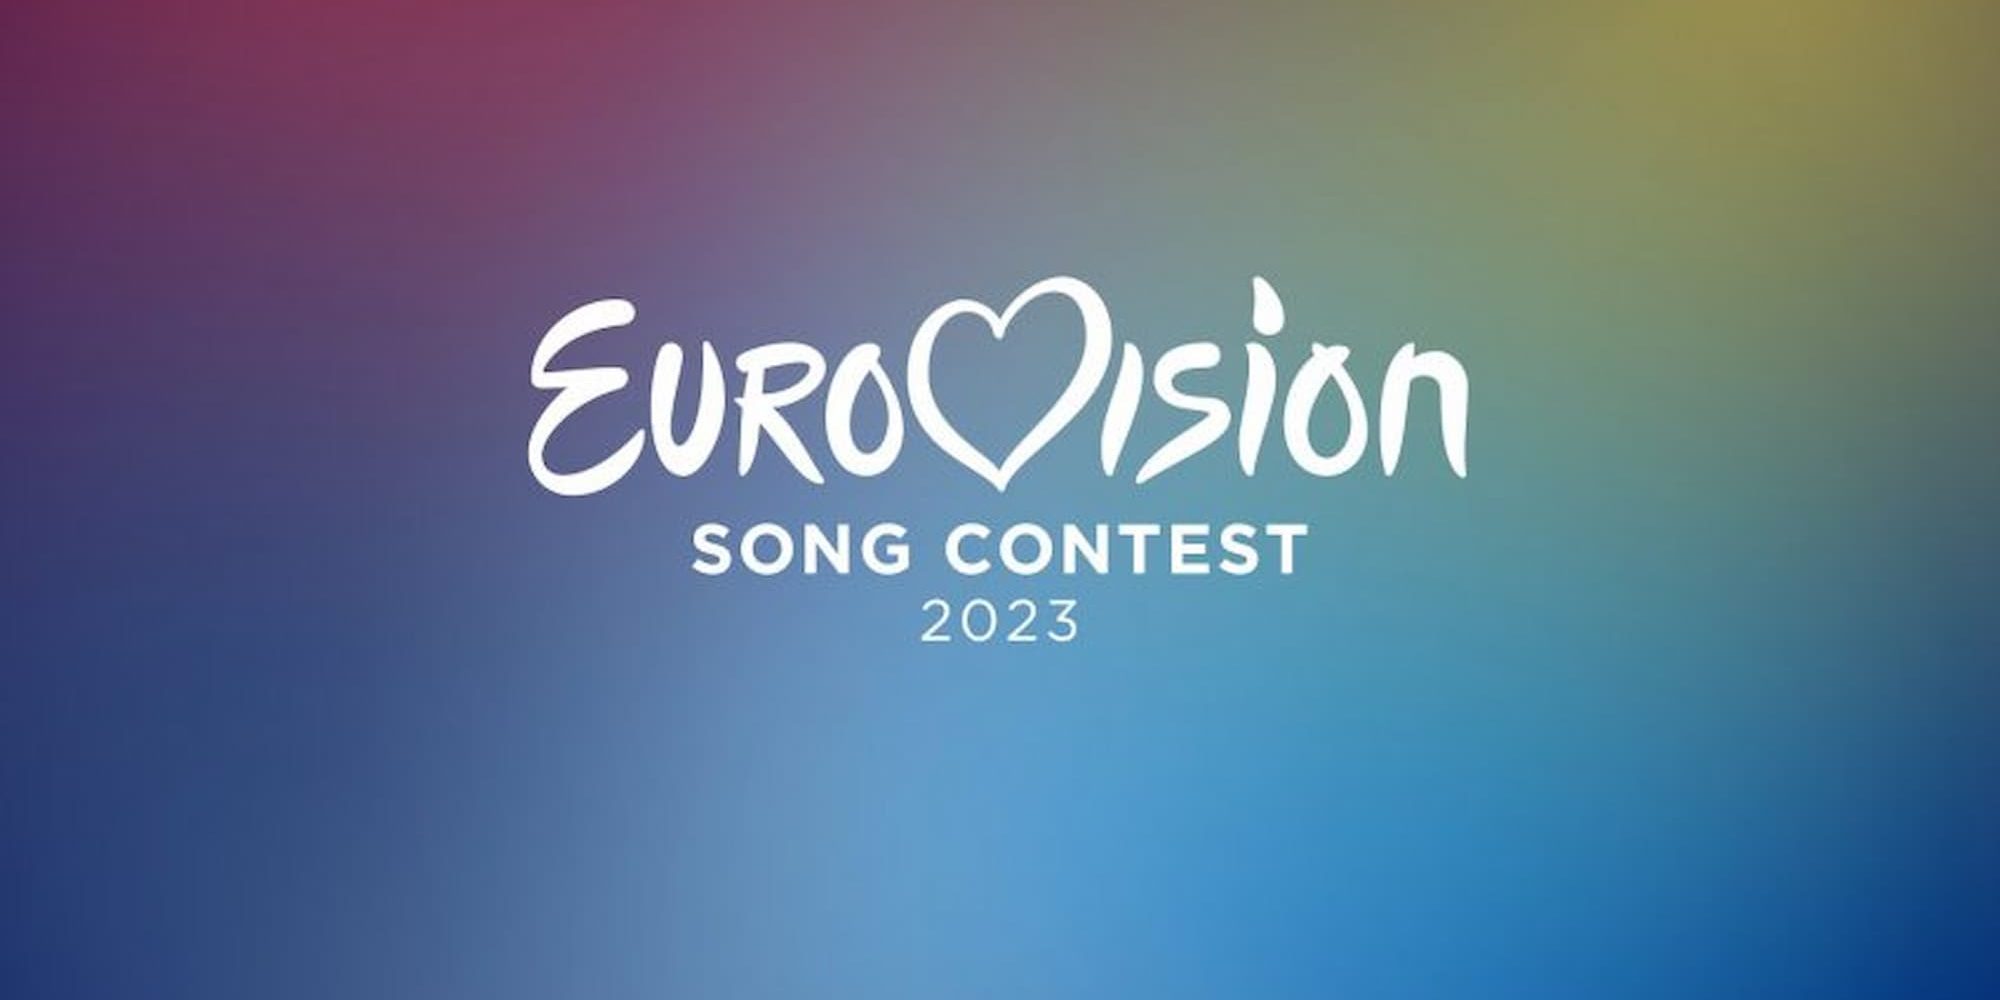 Ανακοίνωση της ΕΡΤ για τη Eurovision 2023